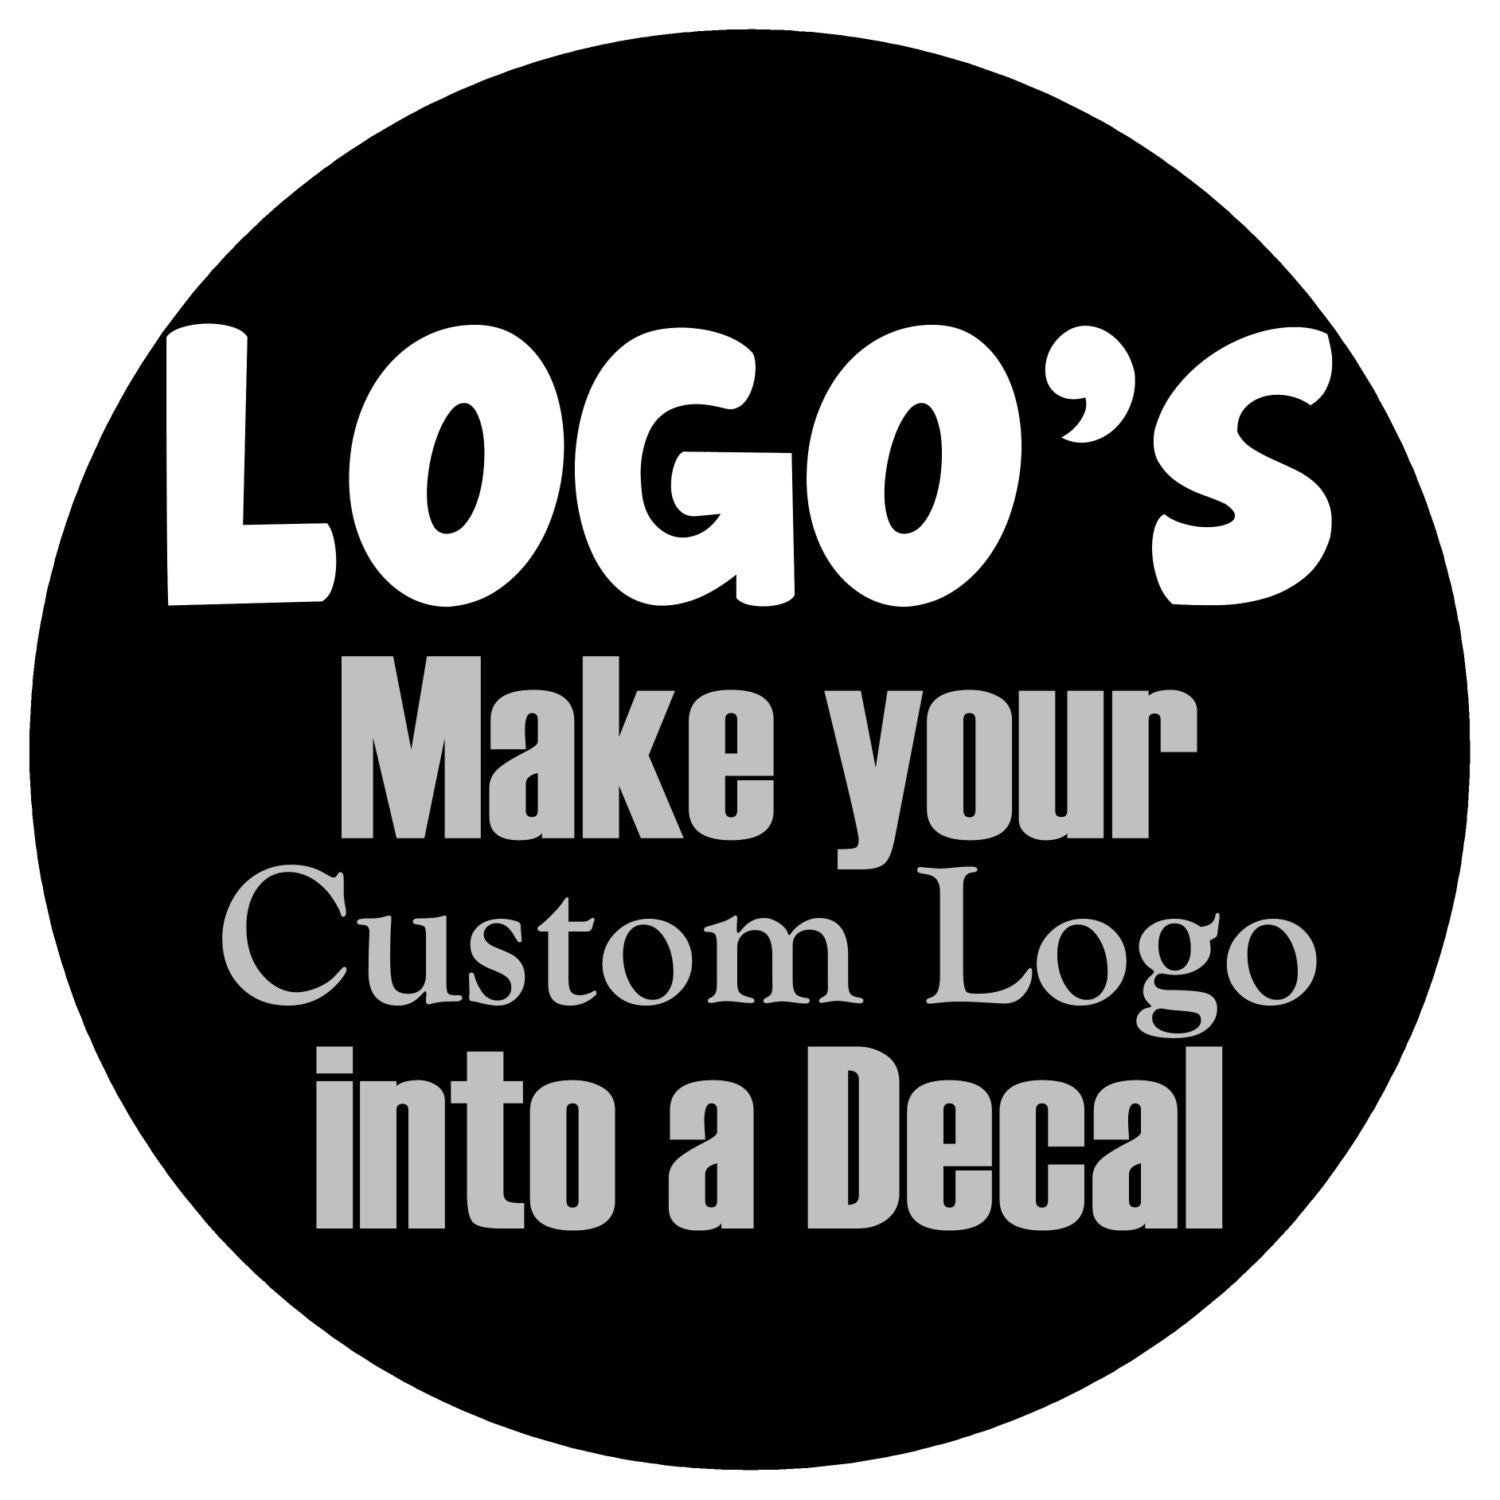 Download logo sticker creator - uploadoke